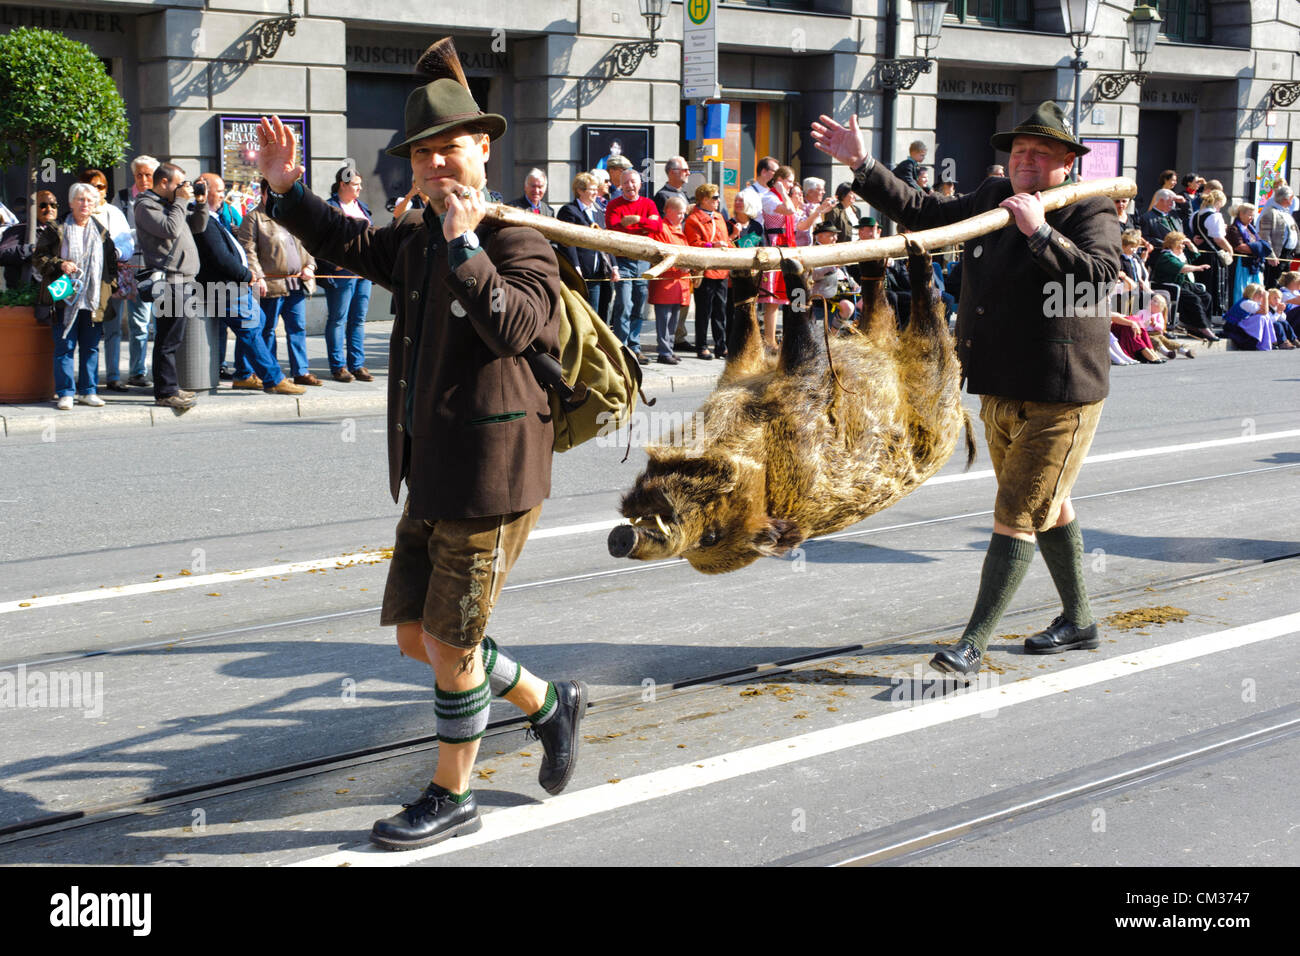 Munich, Allemagne. 23 Septembre, 2012. La parade d'ouverture du plus grand festival de bière, l'Oktoberfest, produit par la ville de Munich, Allemagne. Deux chasseurs avec un cochon sauvage mort faisaient partie des 8900 participants de ce défilé public. Banque D'Images